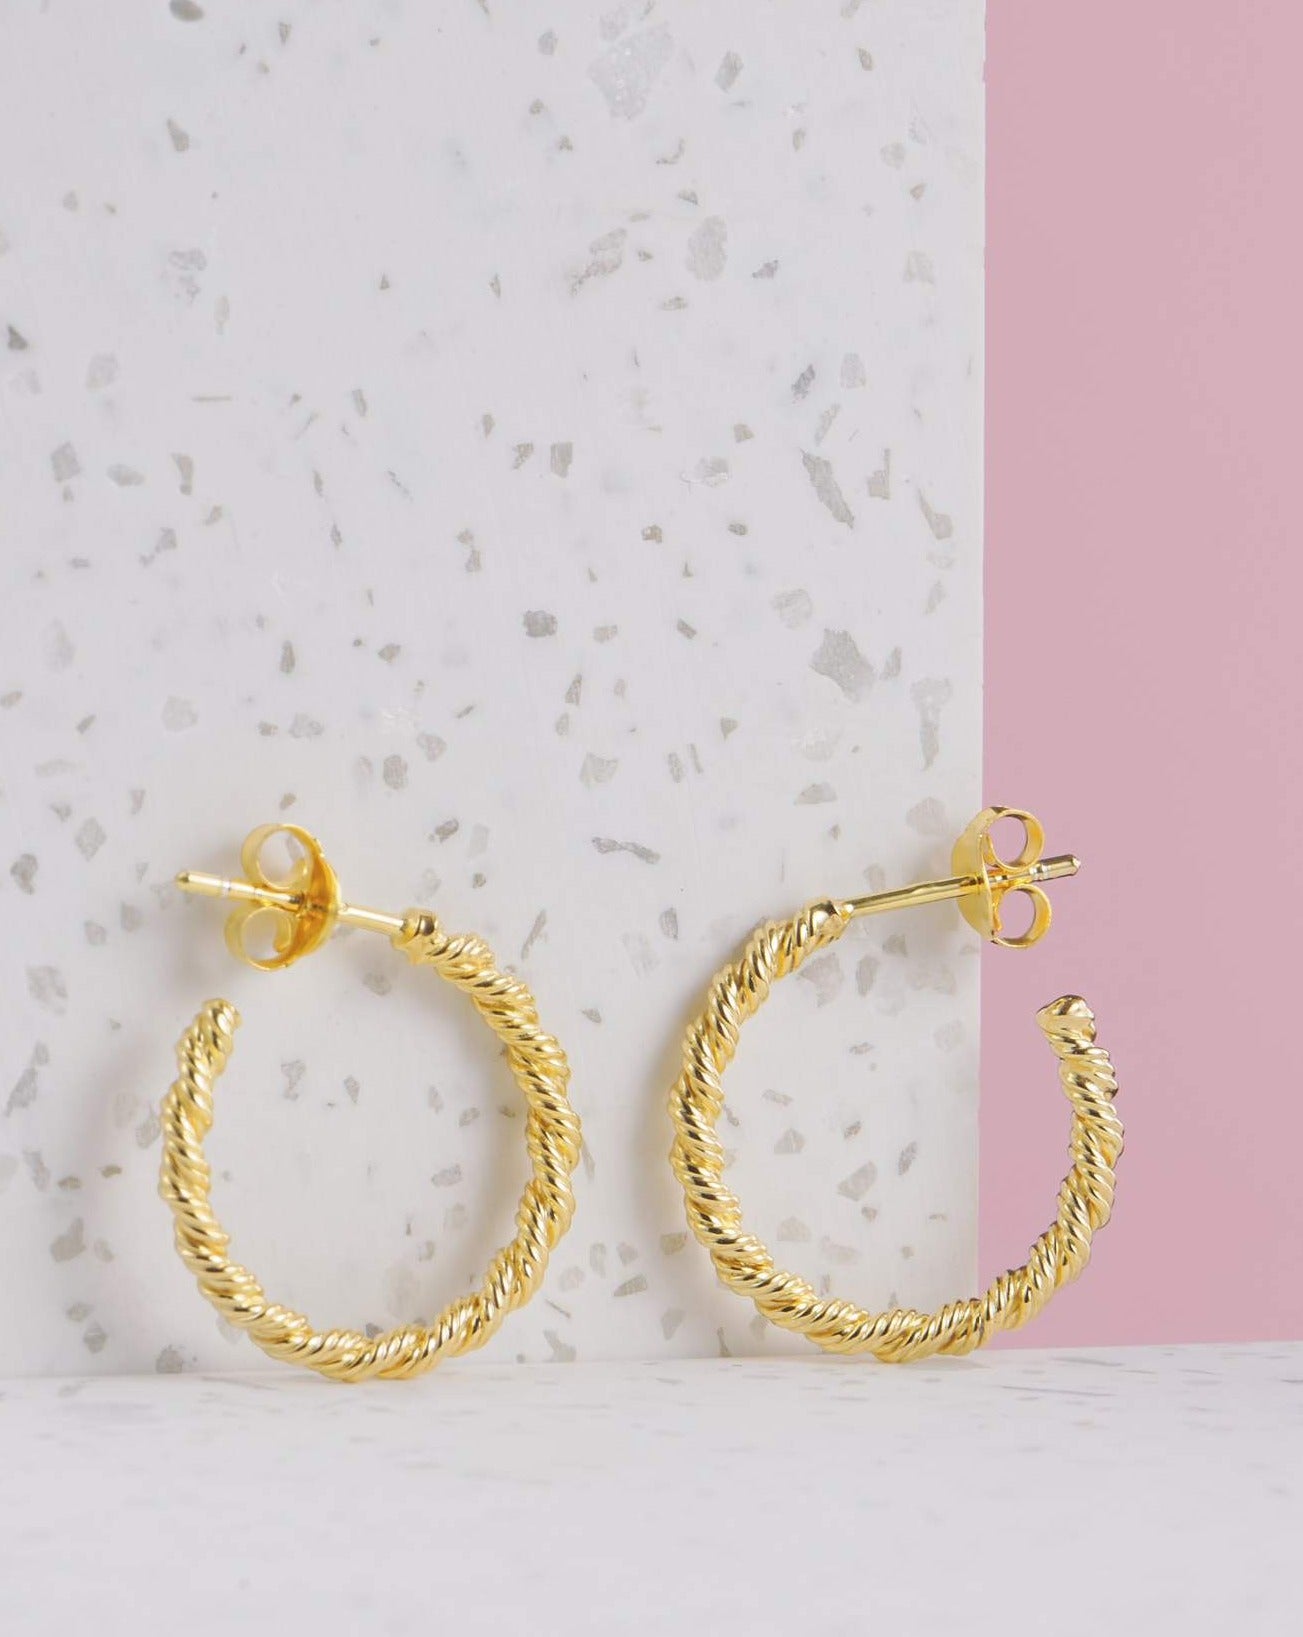 Handgemachte Ohrringe | eingedreht | 925 Silber - 3 Mikron Vergoldung | Fair und umweltschonend auf Bali handgefertigt | CERIA Earrings | VERLAN Jewellery | Fairfashion | Bali Vibes